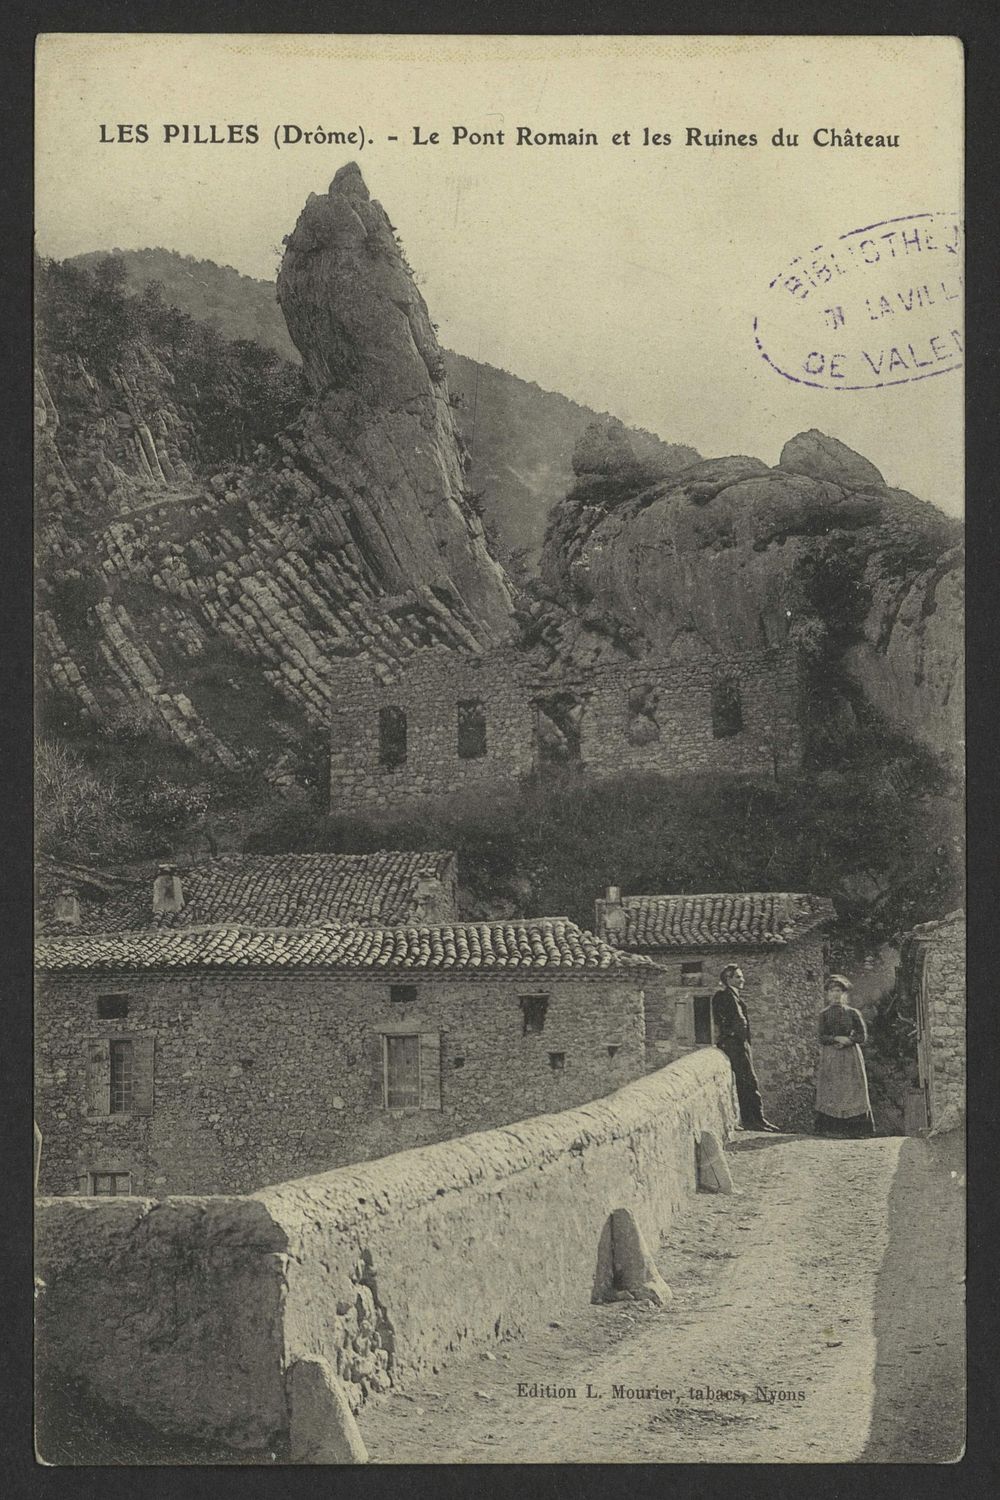 Les Pilles (Drôme) - Le pont romain et les ruines du château